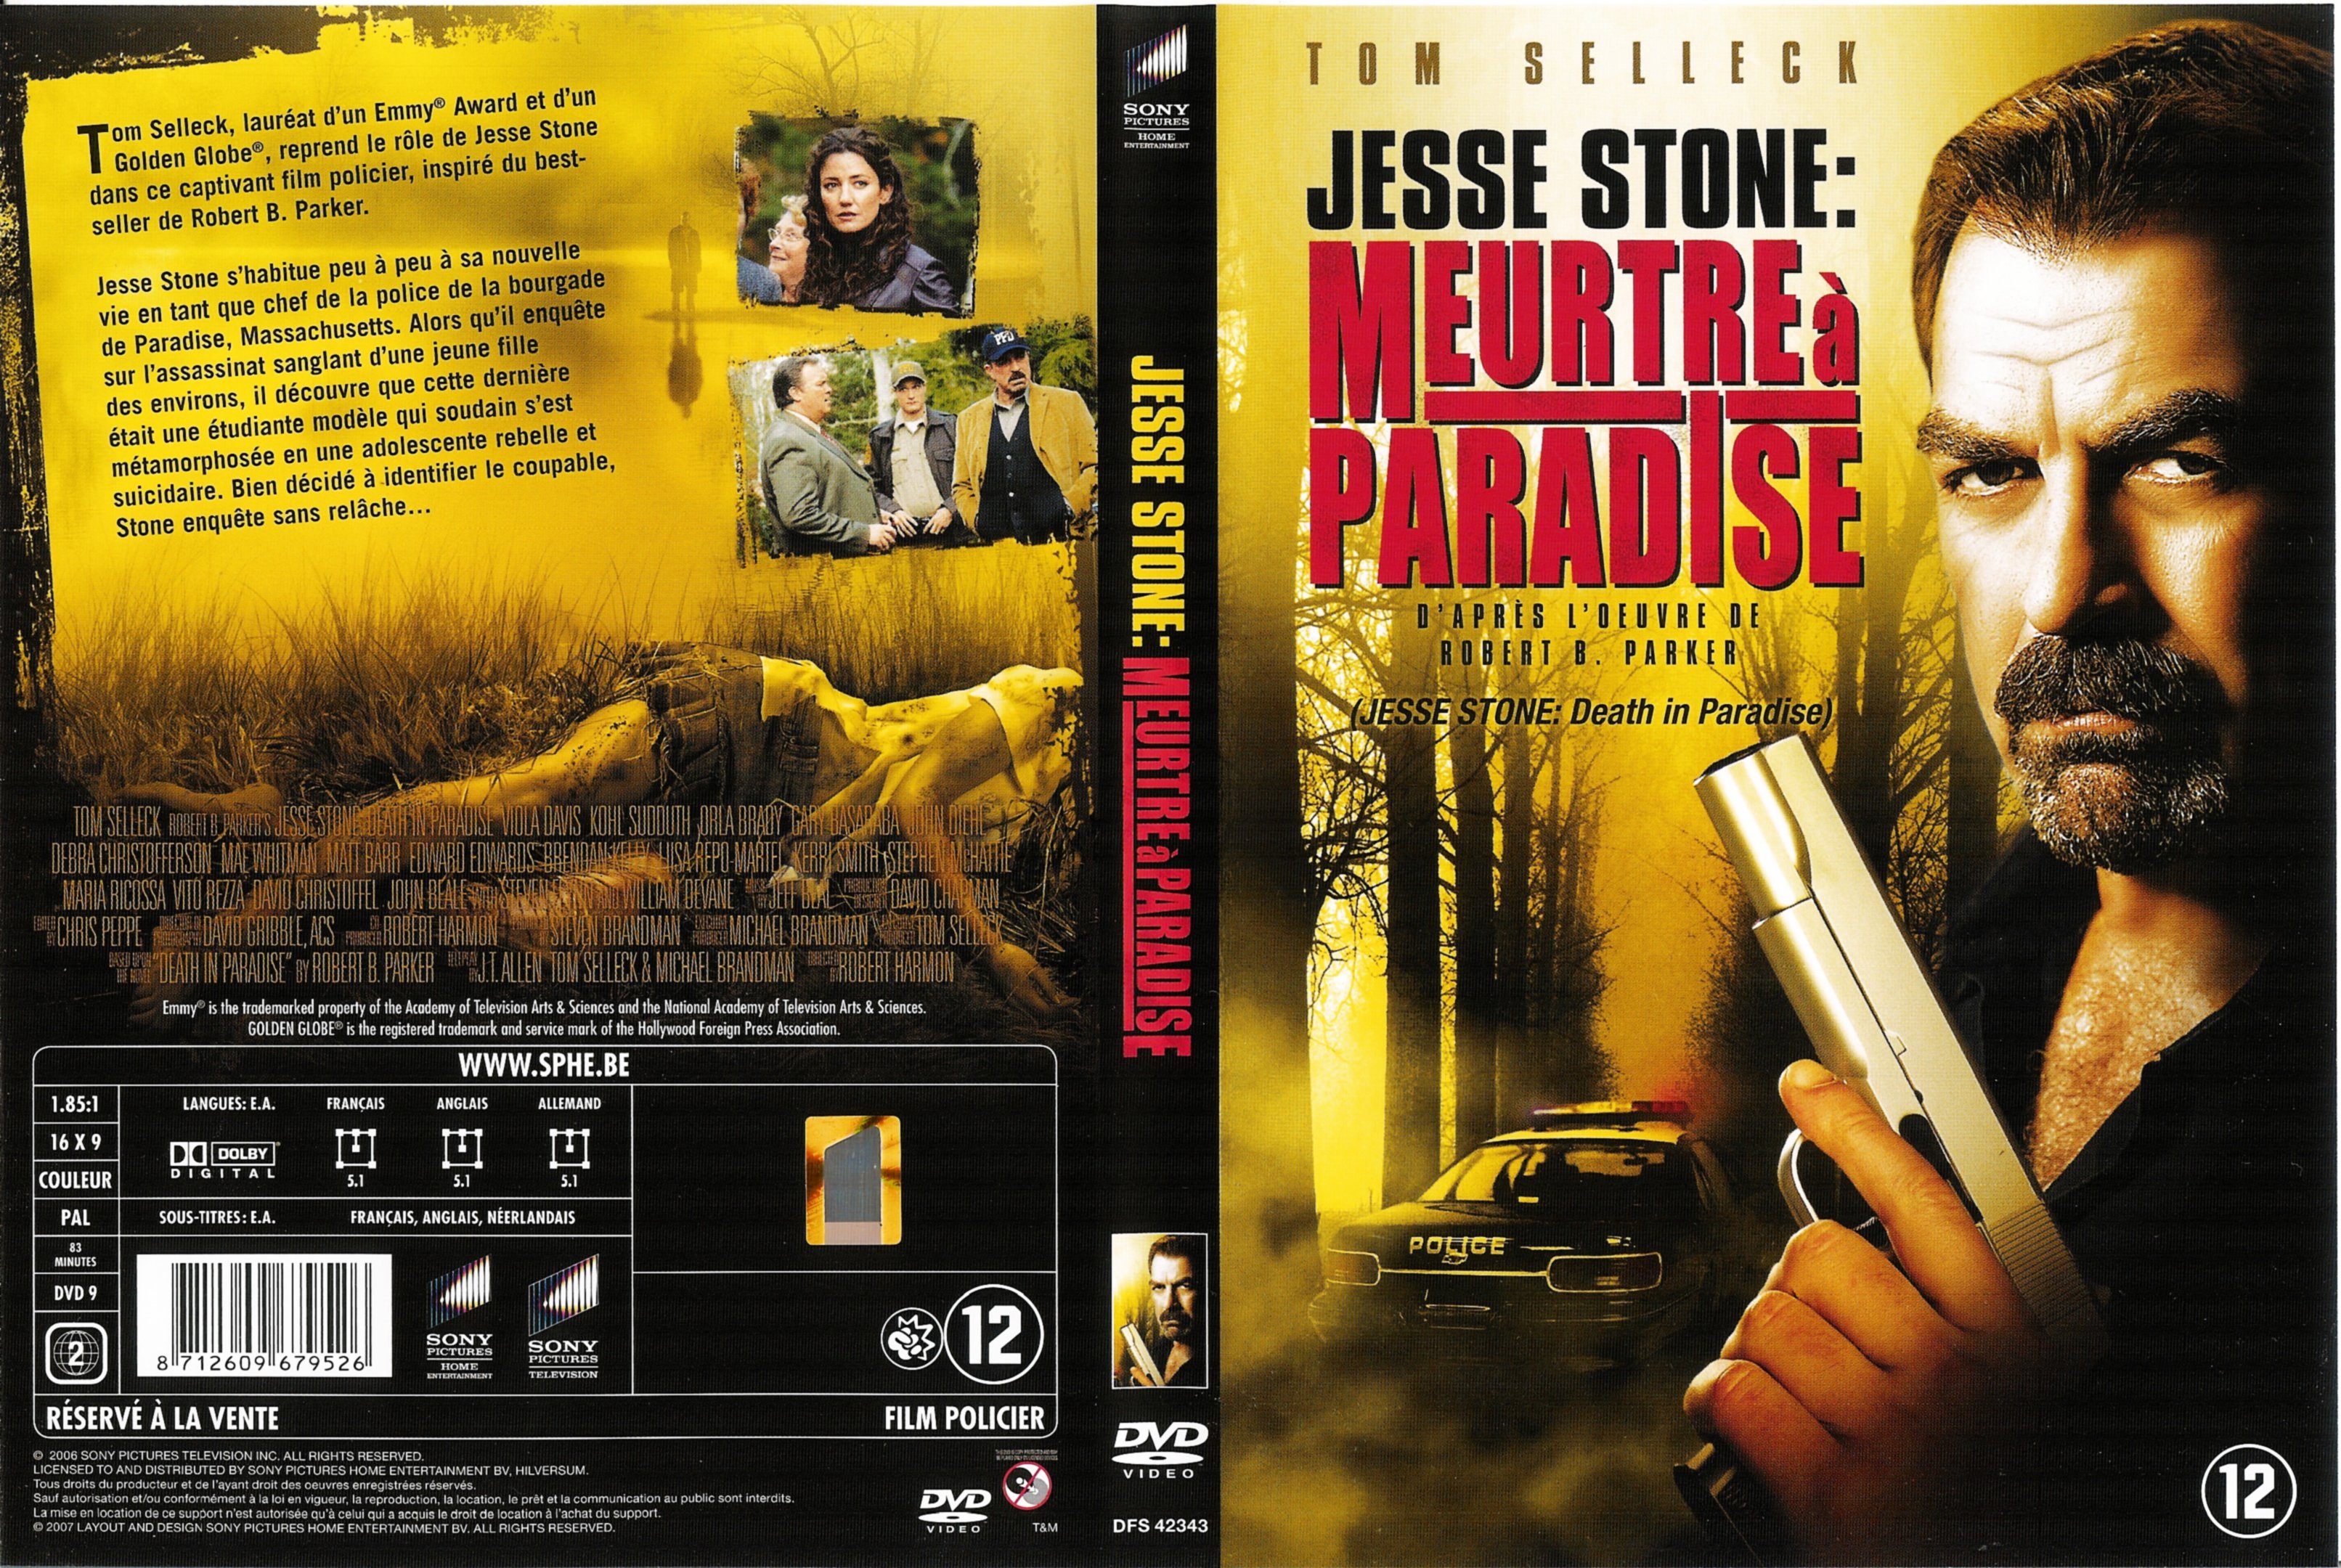 Jaquette DVD Jesse Stone - Meurtre  Paradise v2